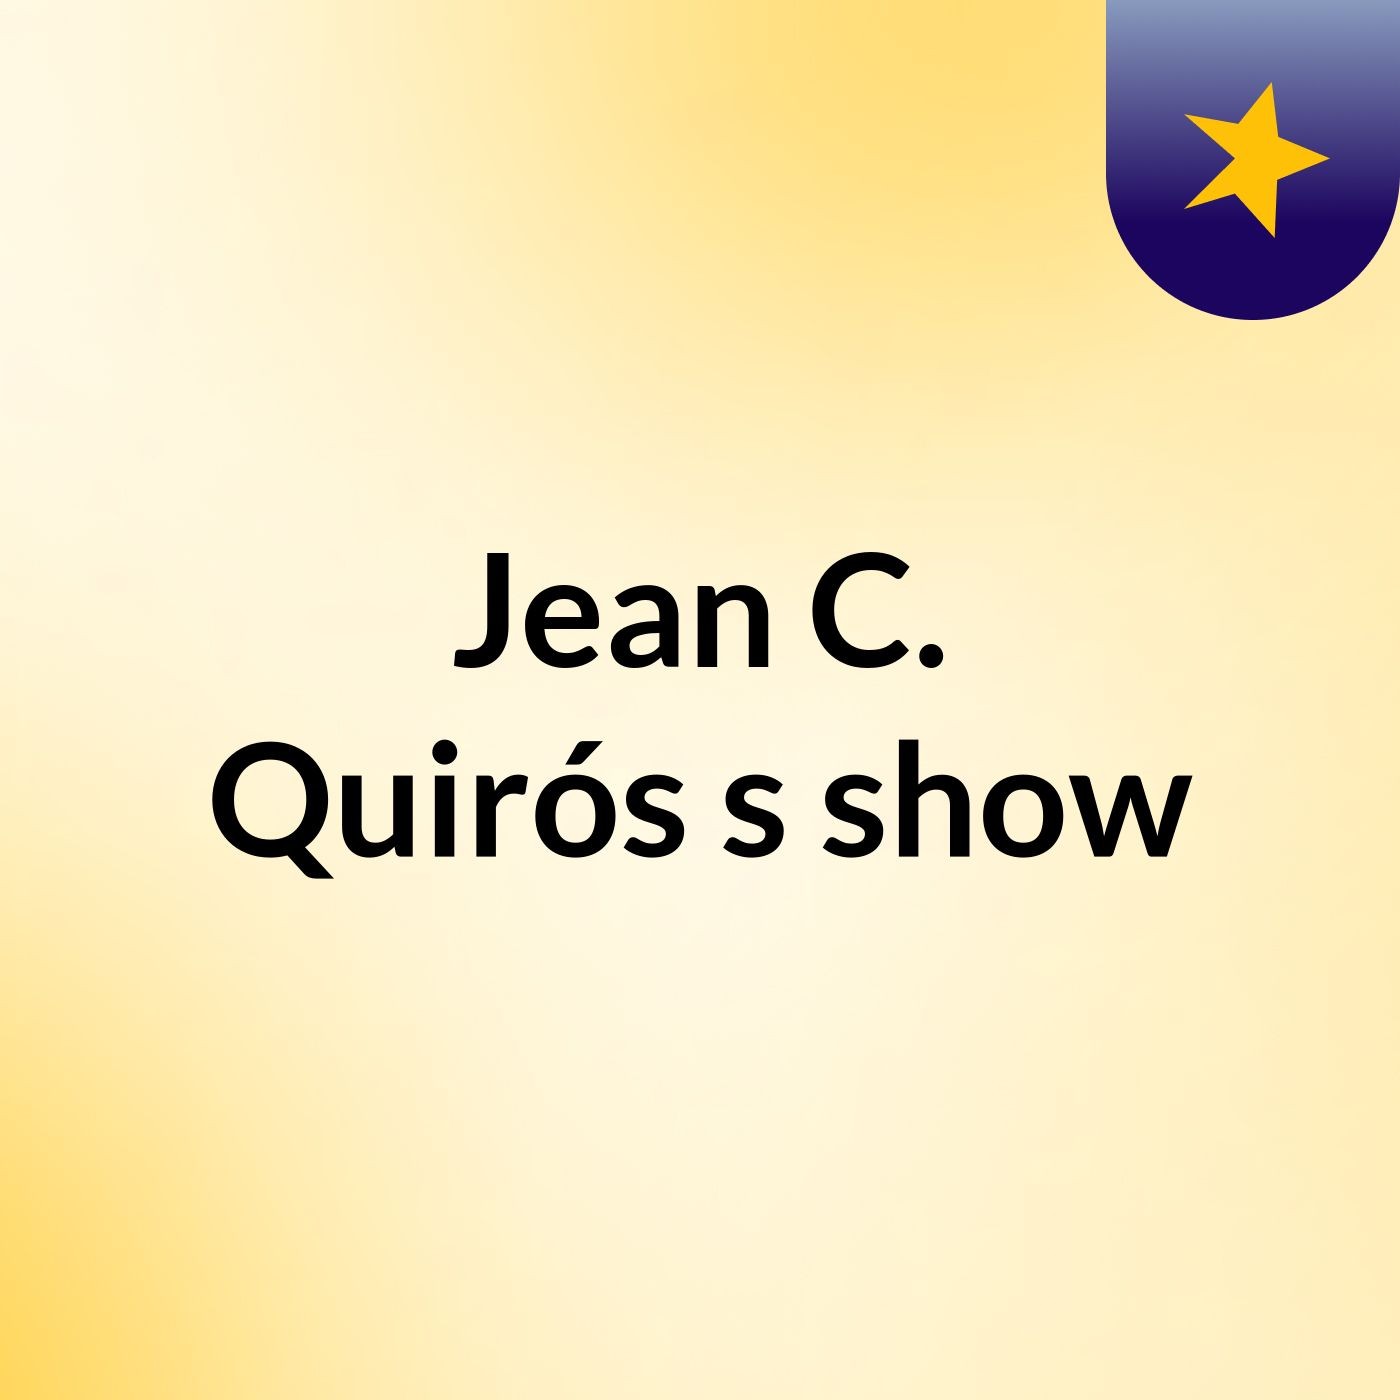 Jean C. Quirós's show